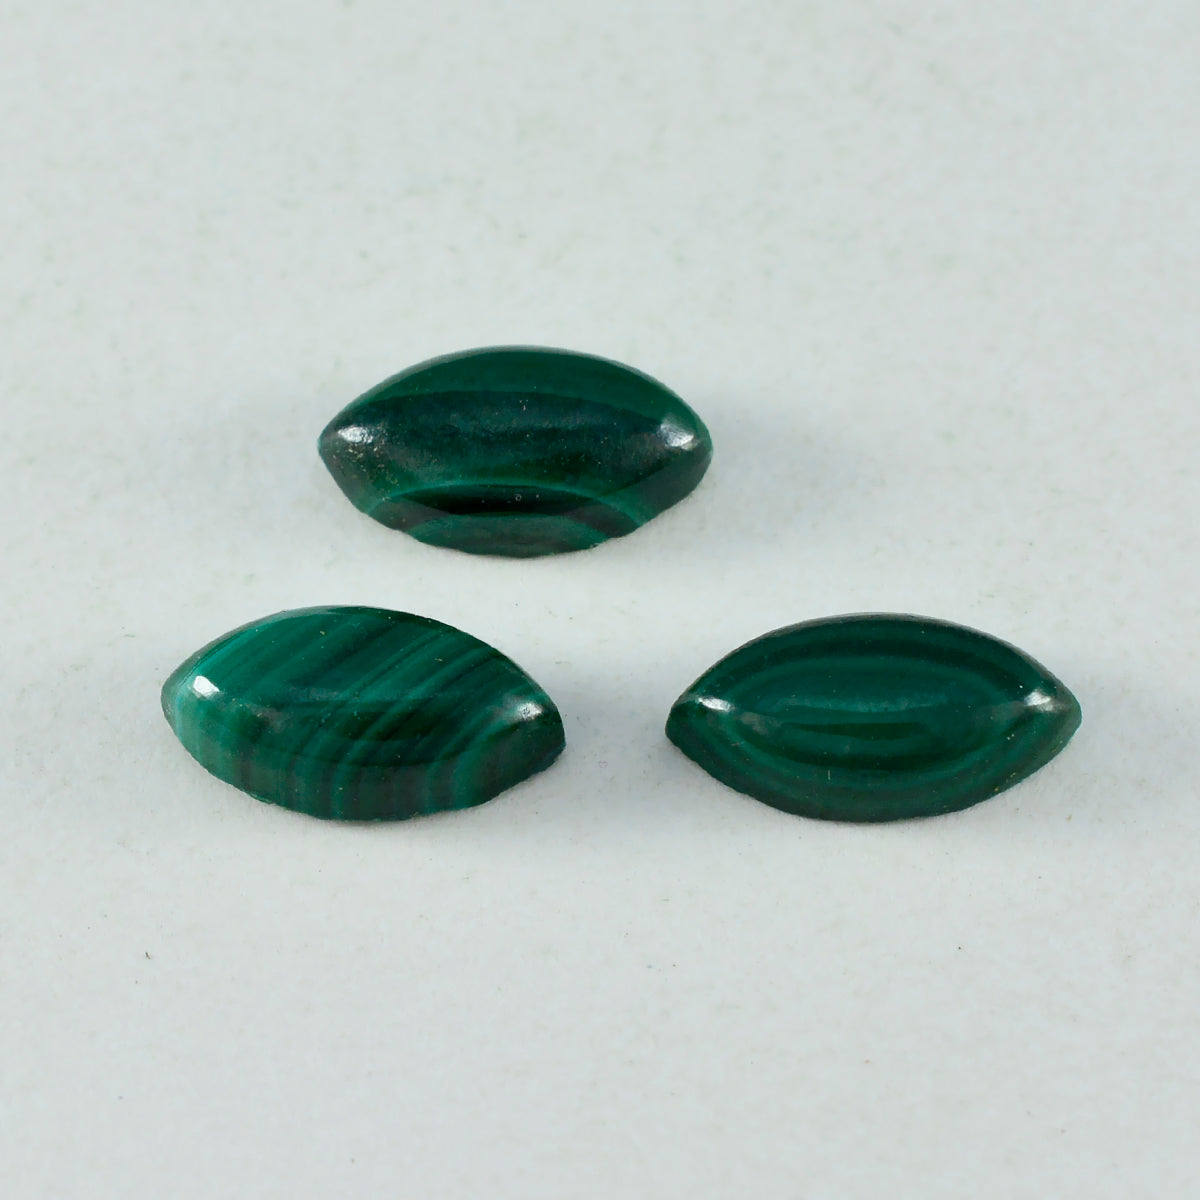 Riyogems 1 Stück grüner Malachit-Cabochon, 7 x 14 mm, Marquise-Form, schöner Qualitätsstein